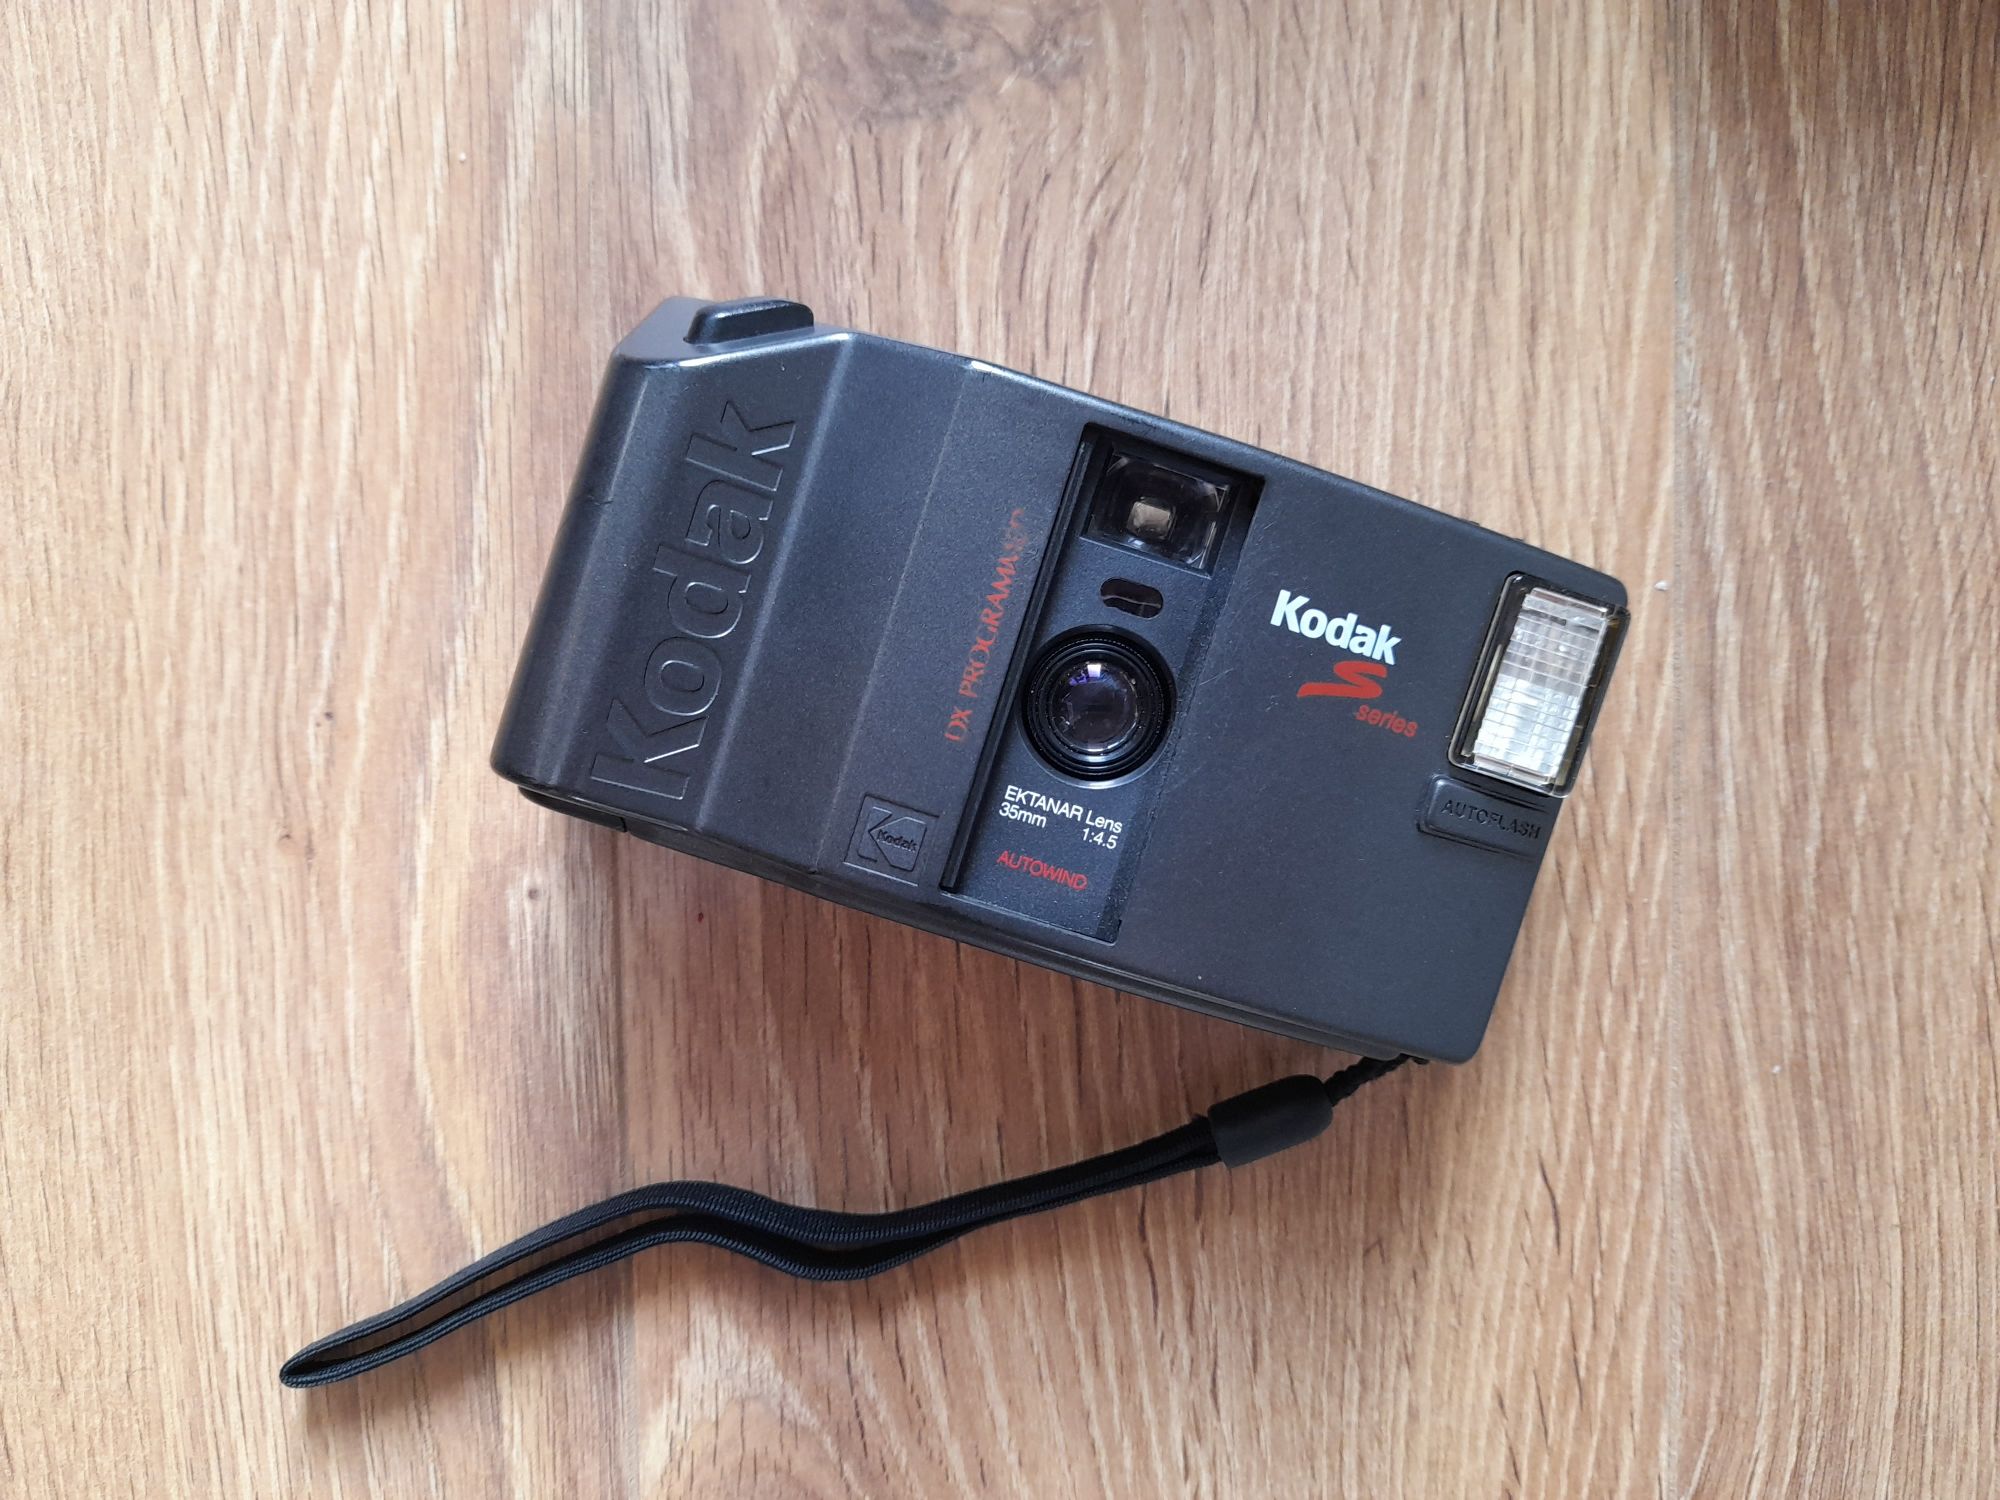 Kodak S40SL, aparat Analogowy, kompakt na kliszę